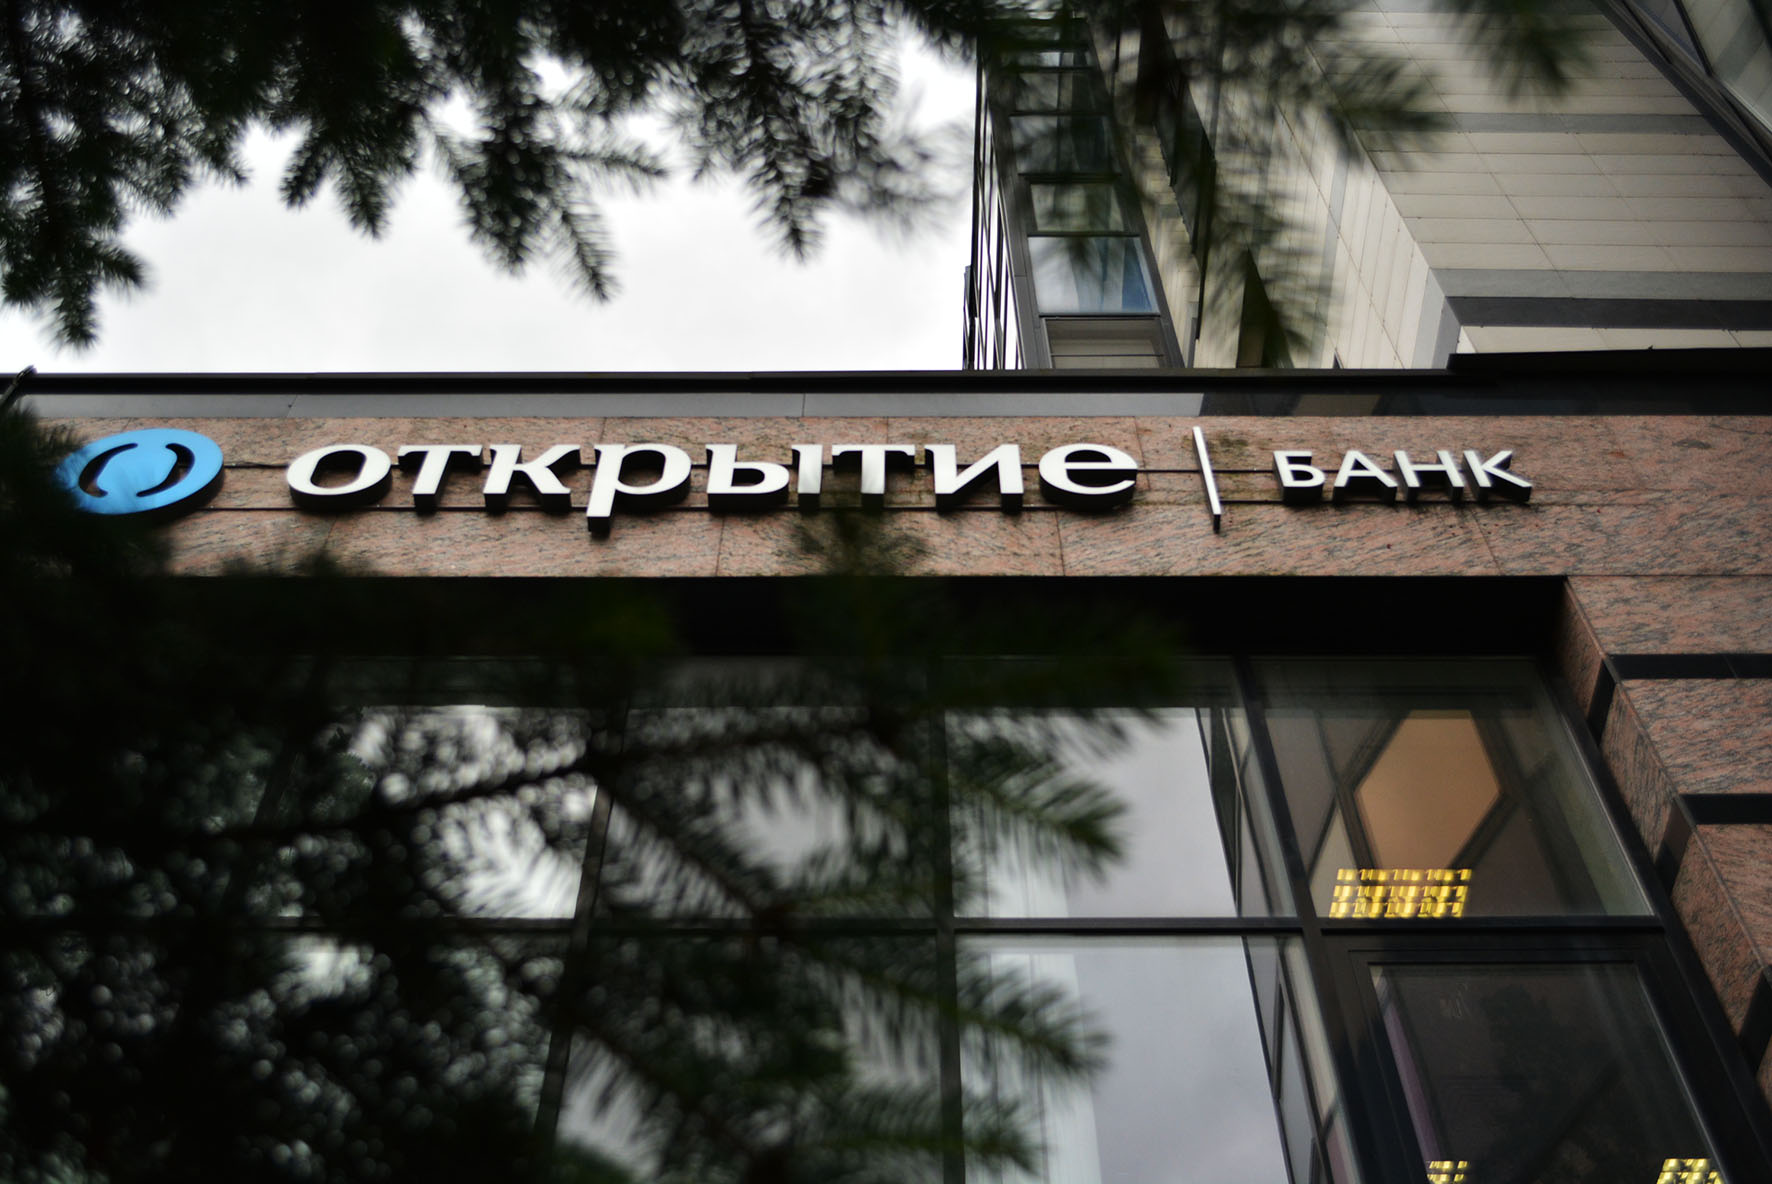 Российский банк открытие